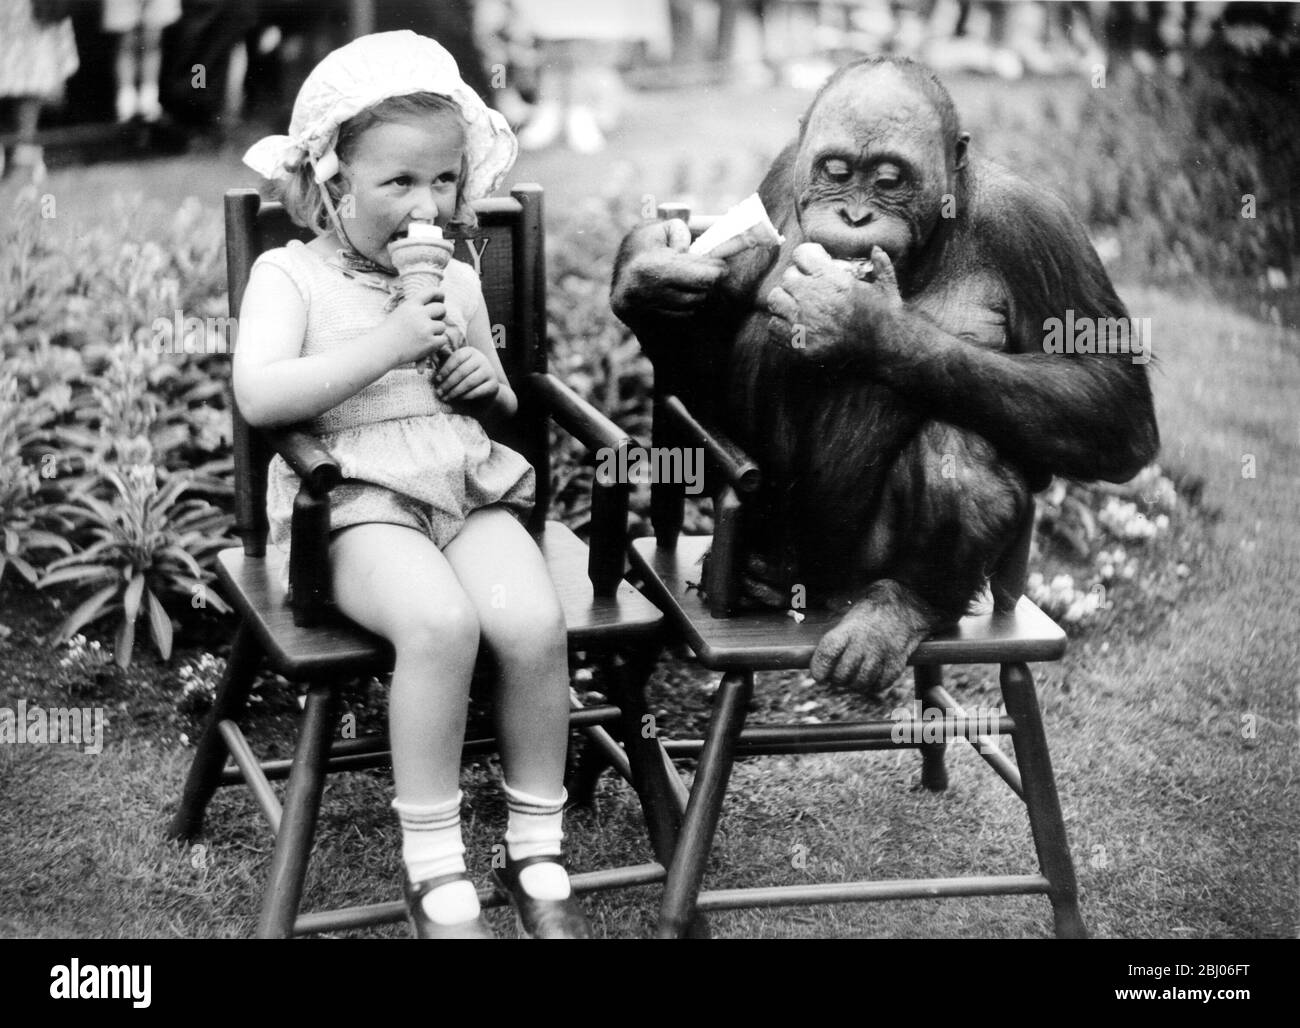 Jedes Kind liebt Eis, aber auch Spike, das Orang OUtan im London Zoo. Als sich die kleine Carol Phillips auf einem Stuhl niederließ, um ihr Eiskornett zu genießen, zog sie die Aufmerksamkeit von Spike auf sich, der sich entschied, dass auch er eine möchte. Nach dem Gesichtsausdruck zu urteilen, fand er es nach seinem Geschmack, obwohl ihm die Kälte des Eises beim ersten Bissen den Atem raubte. - 30. Juni 1949 Stockfoto